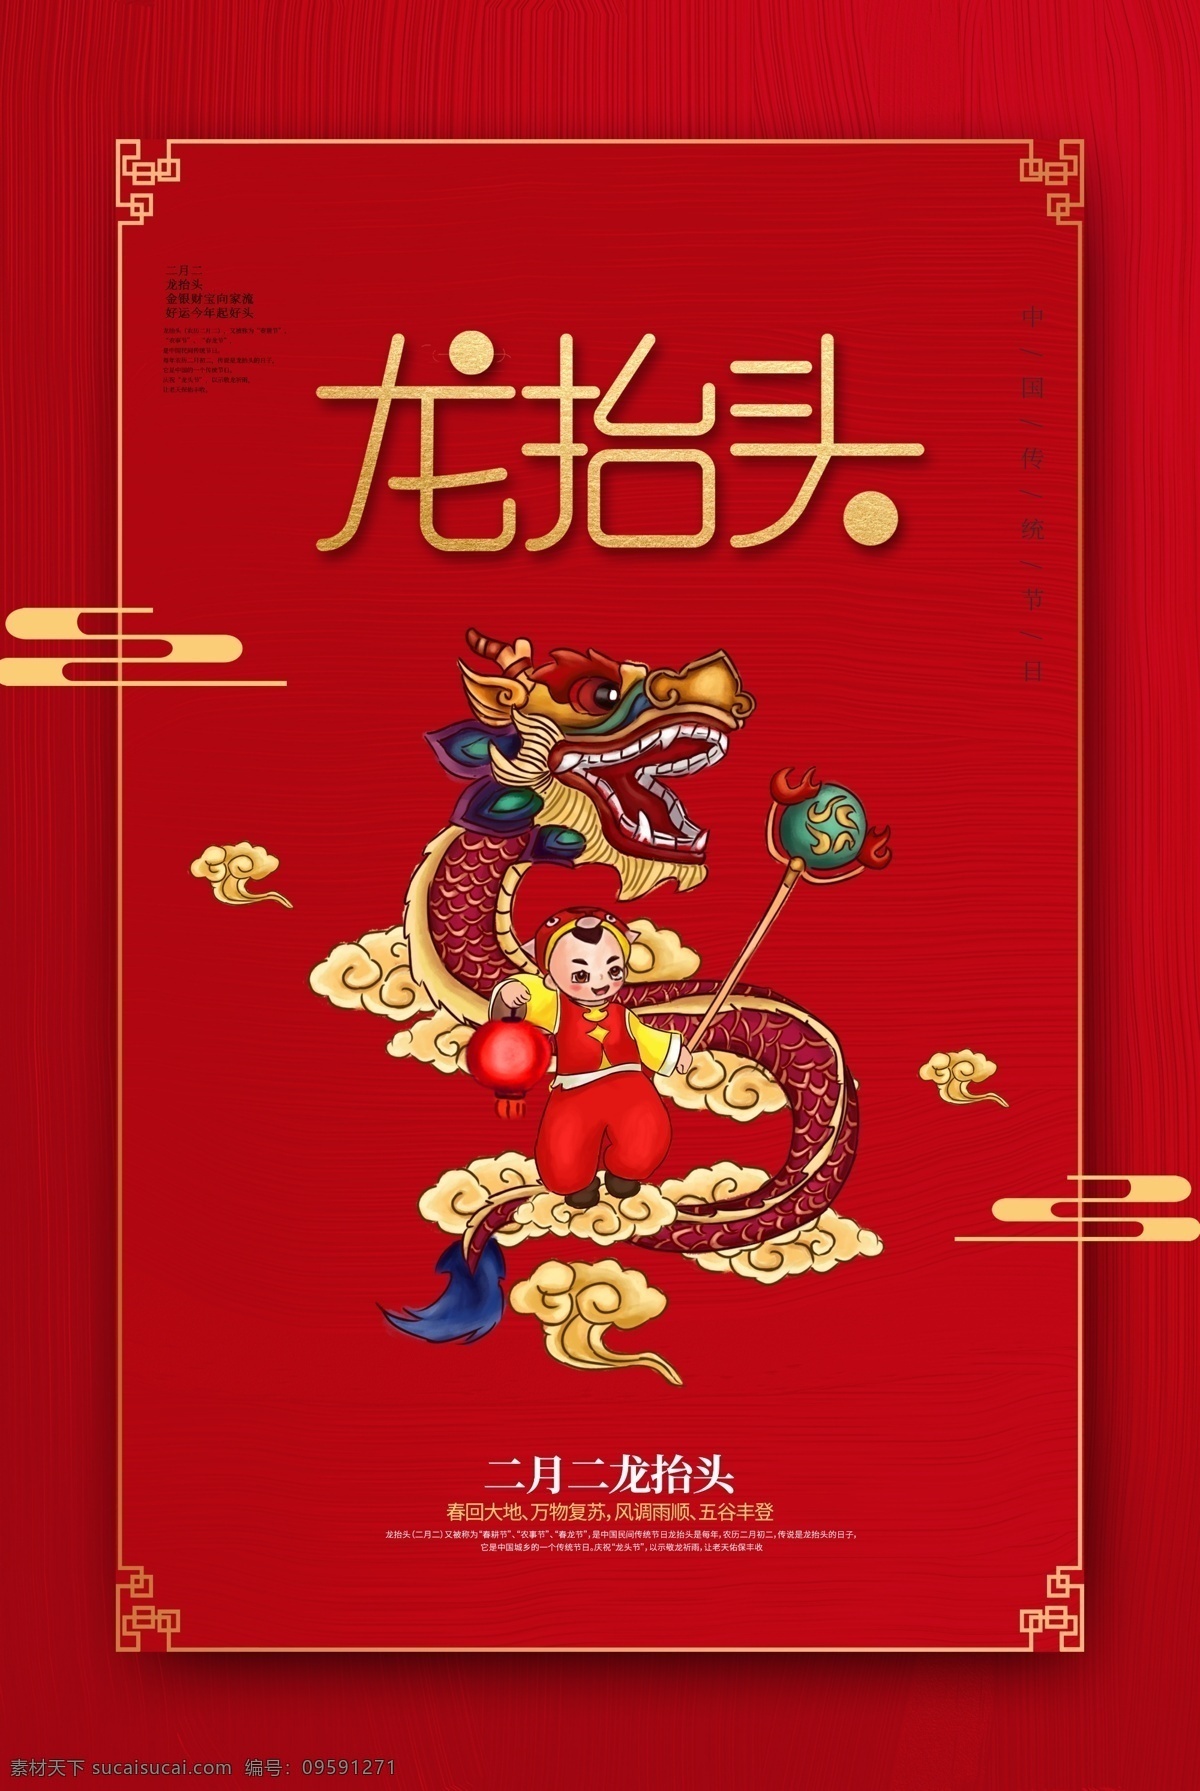 简约 红色 龙 抬头 海报 龙抬头 传统习俗 二月初二 节日海报 灯笼 舞龙 传统节日